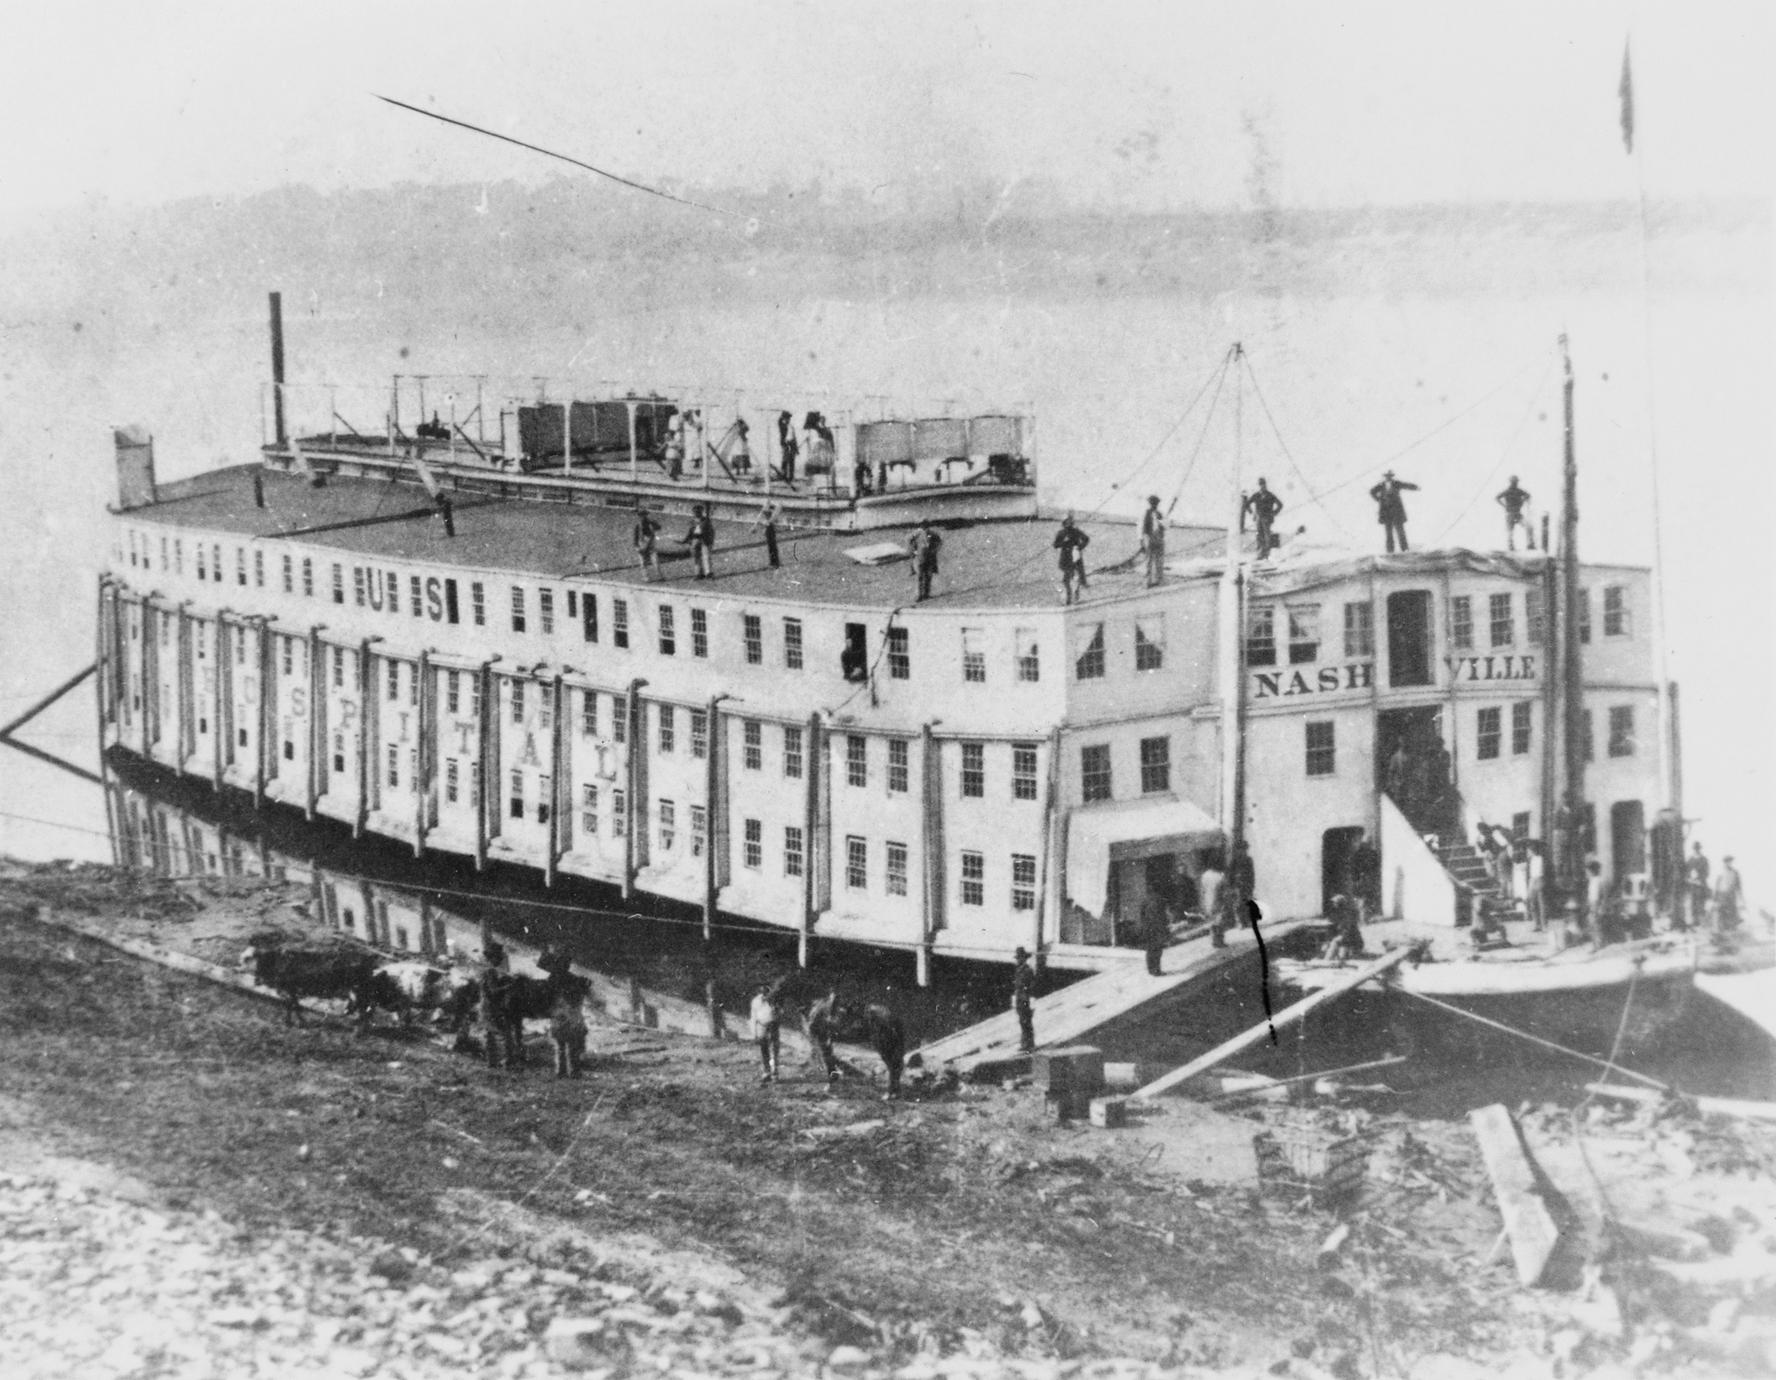 Nashville (Packet/Hospital boat, 1849-?)